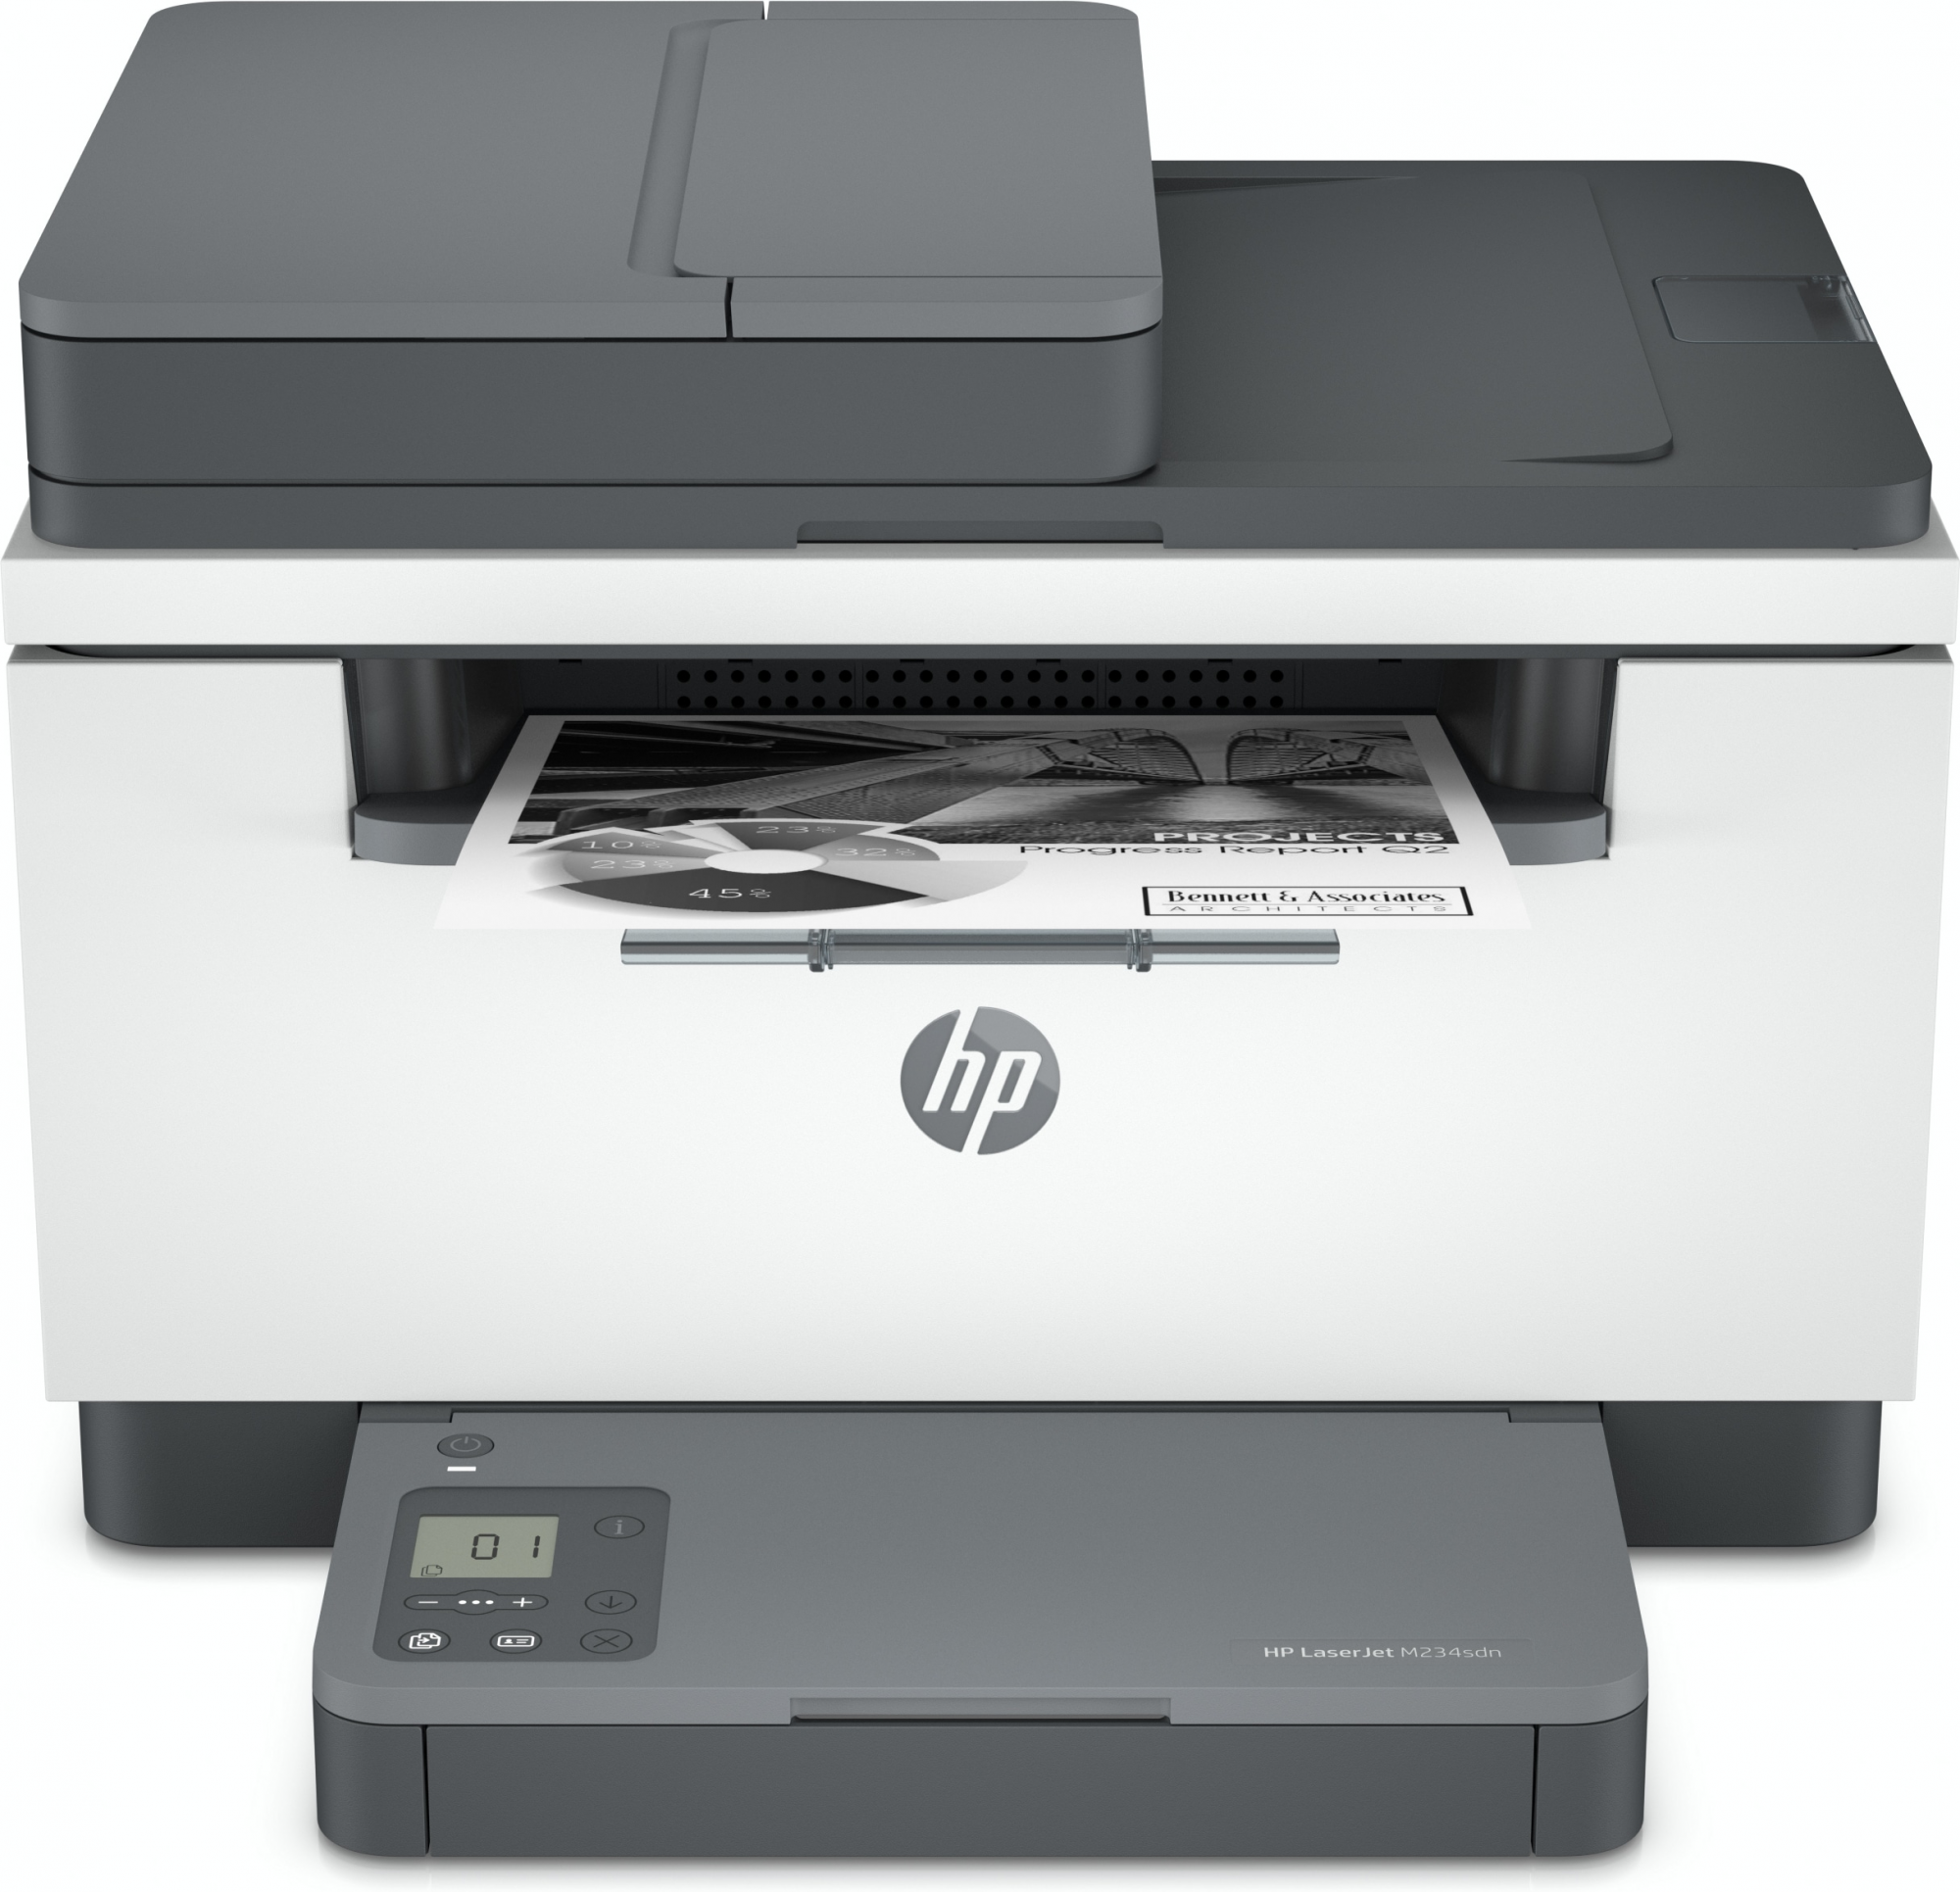 Image of HP LaserJet Stampante multifunzione M234sdn, Bianco e nero, Stampante per Piccoli uffici, Stampa, copia, scansione, Scansione verso e-mail; scansione verso PDF